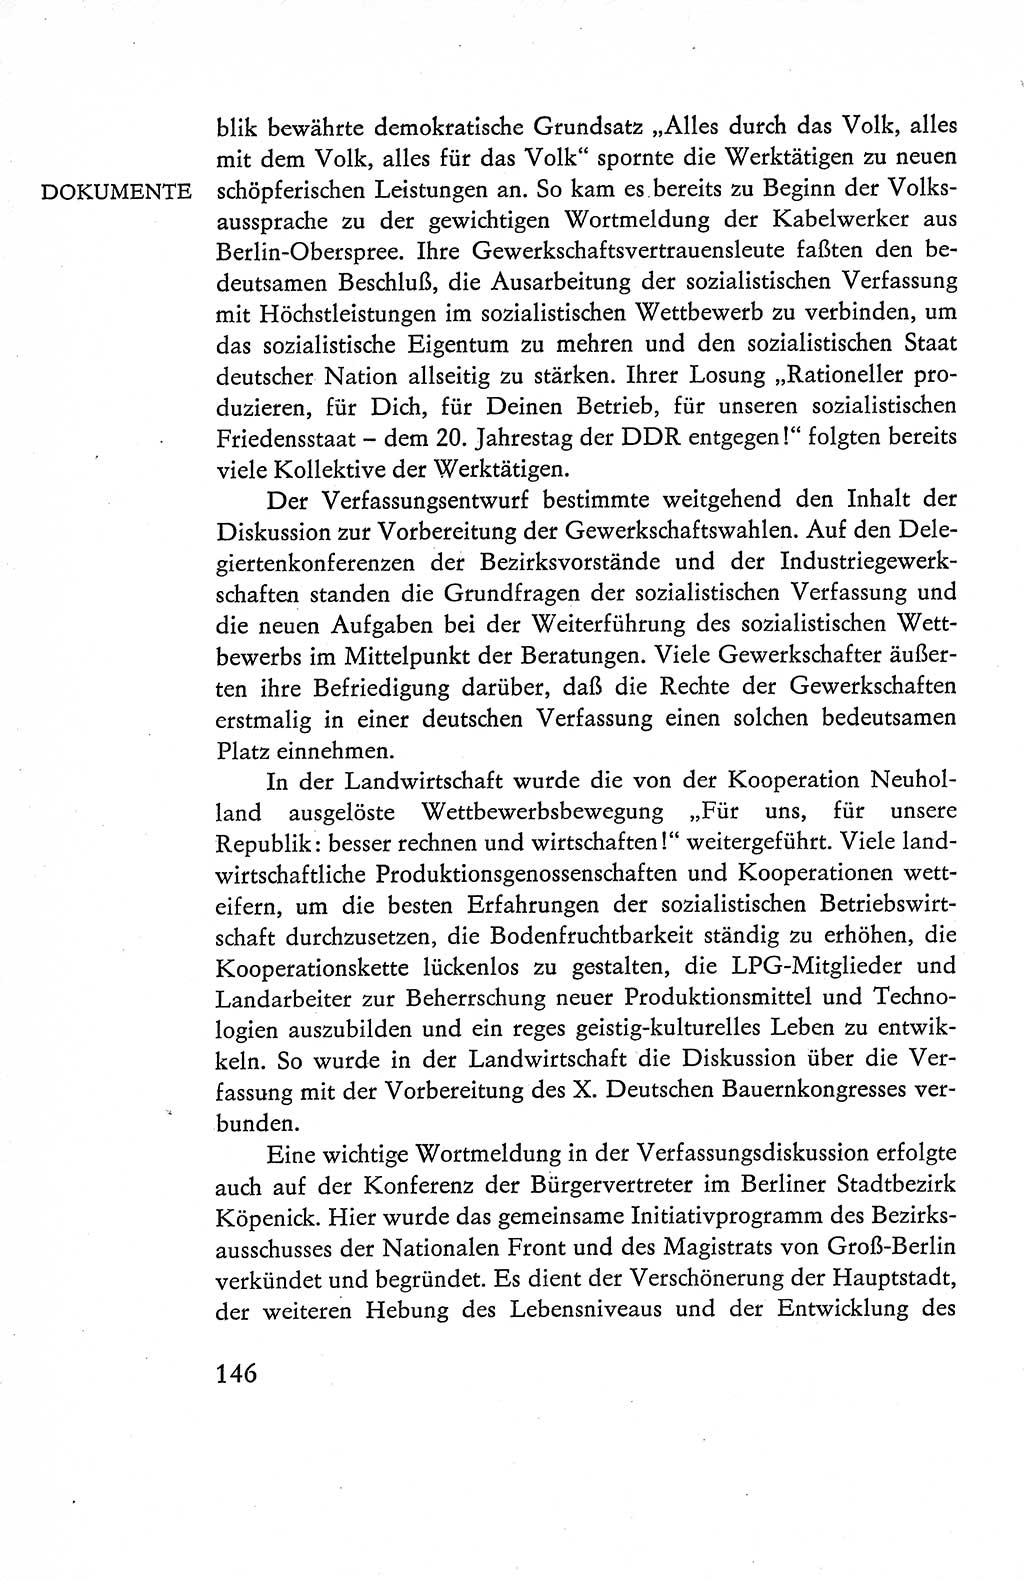 Verfassung der Deutschen Demokratischen Republik (DDR), Dokumente, Kommentar 1969, Band 1, Seite 146 (Verf. DDR Dok. Komm. 1969, Bd. 1, S. 146)